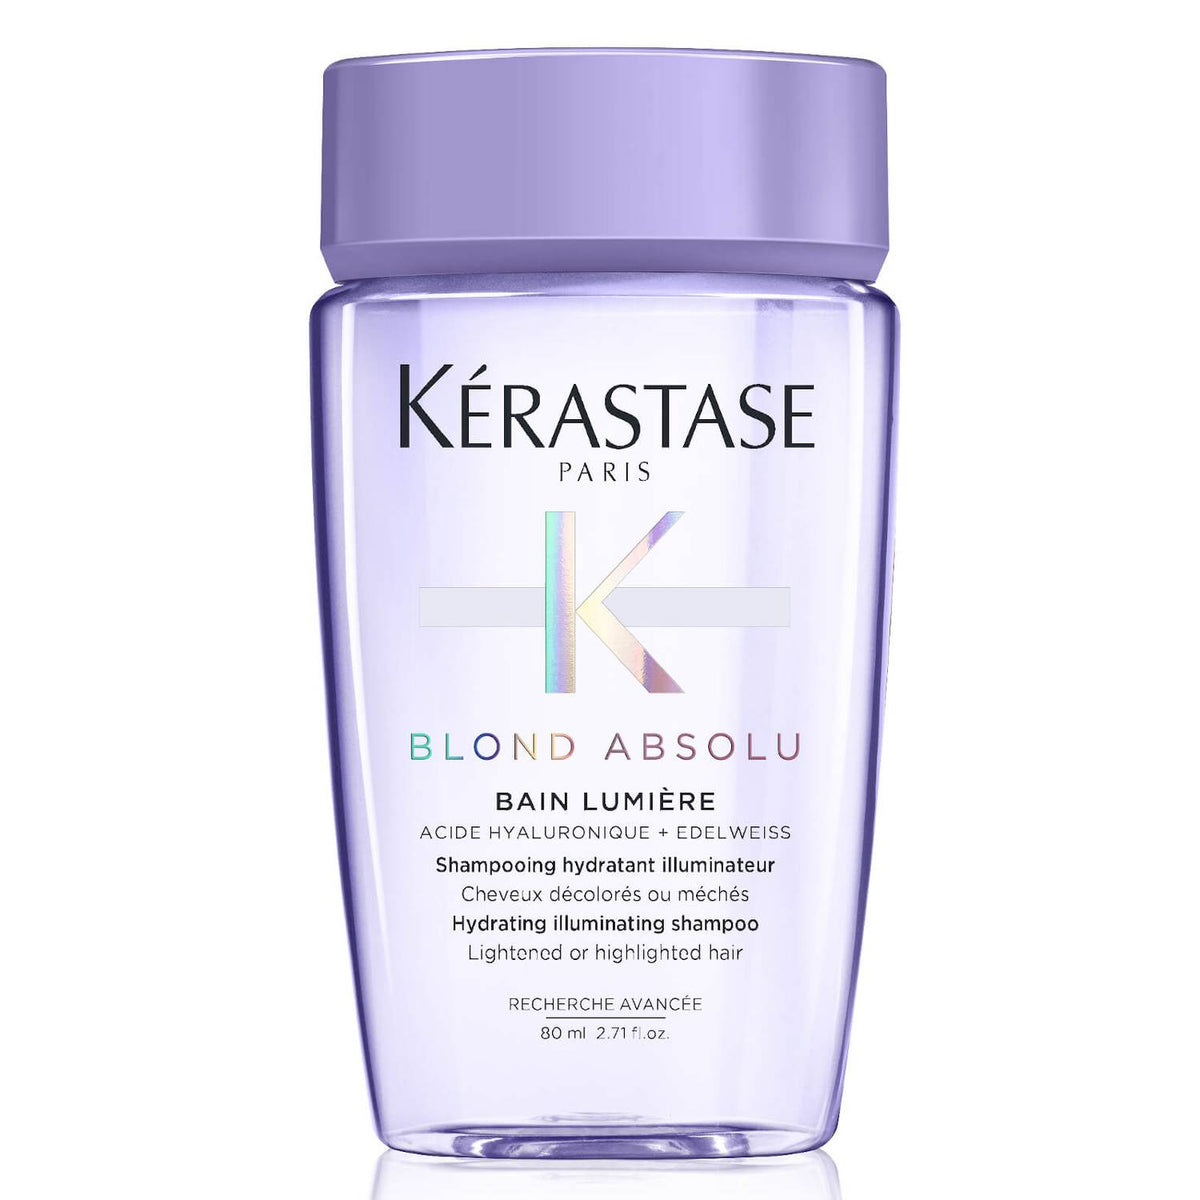 Kerastase Blonde Absolute Ultra Violet Shampoo 80 ML - For Blonde Hair - Makeup Stash Pakistan - Kerastase